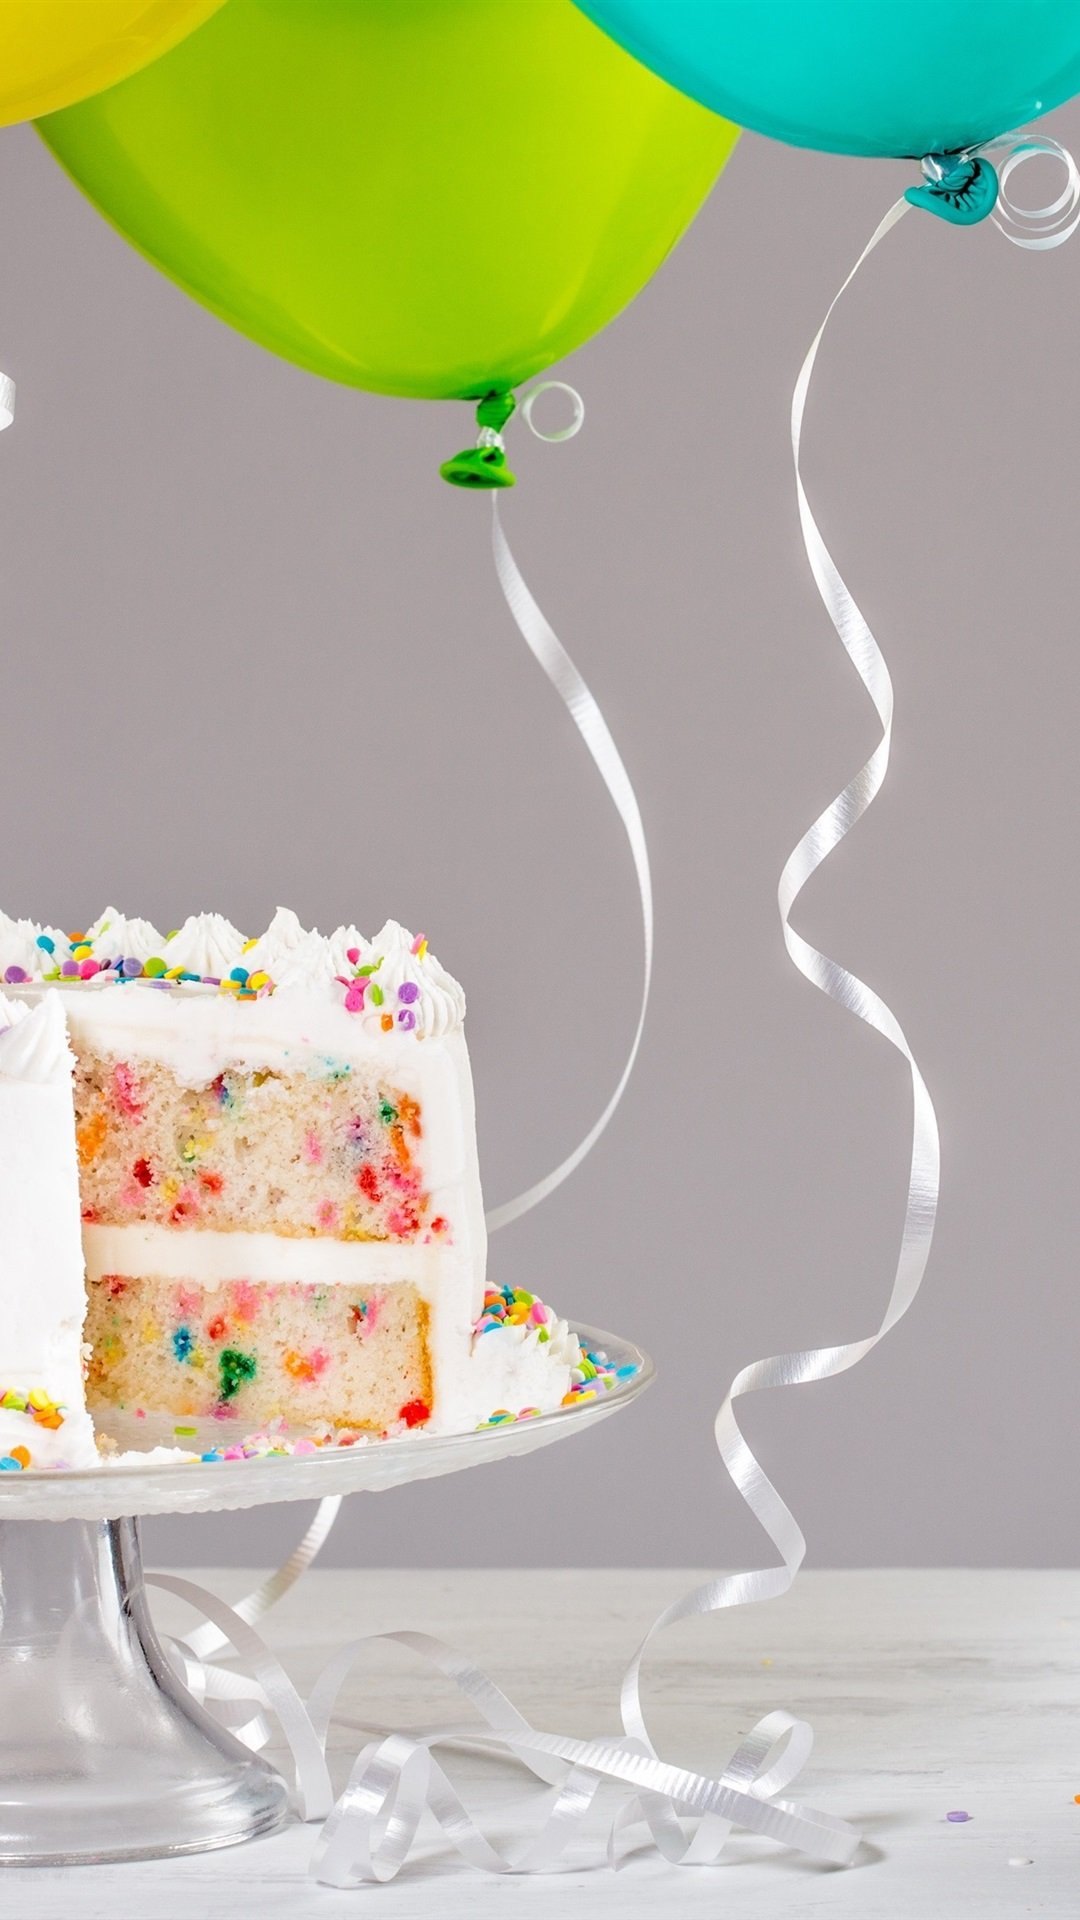 С днем рождения с тортом и шарами. Торт с шариками. Тортик с днем рождения. Торт «воздушные шарики». Воздушный торт.